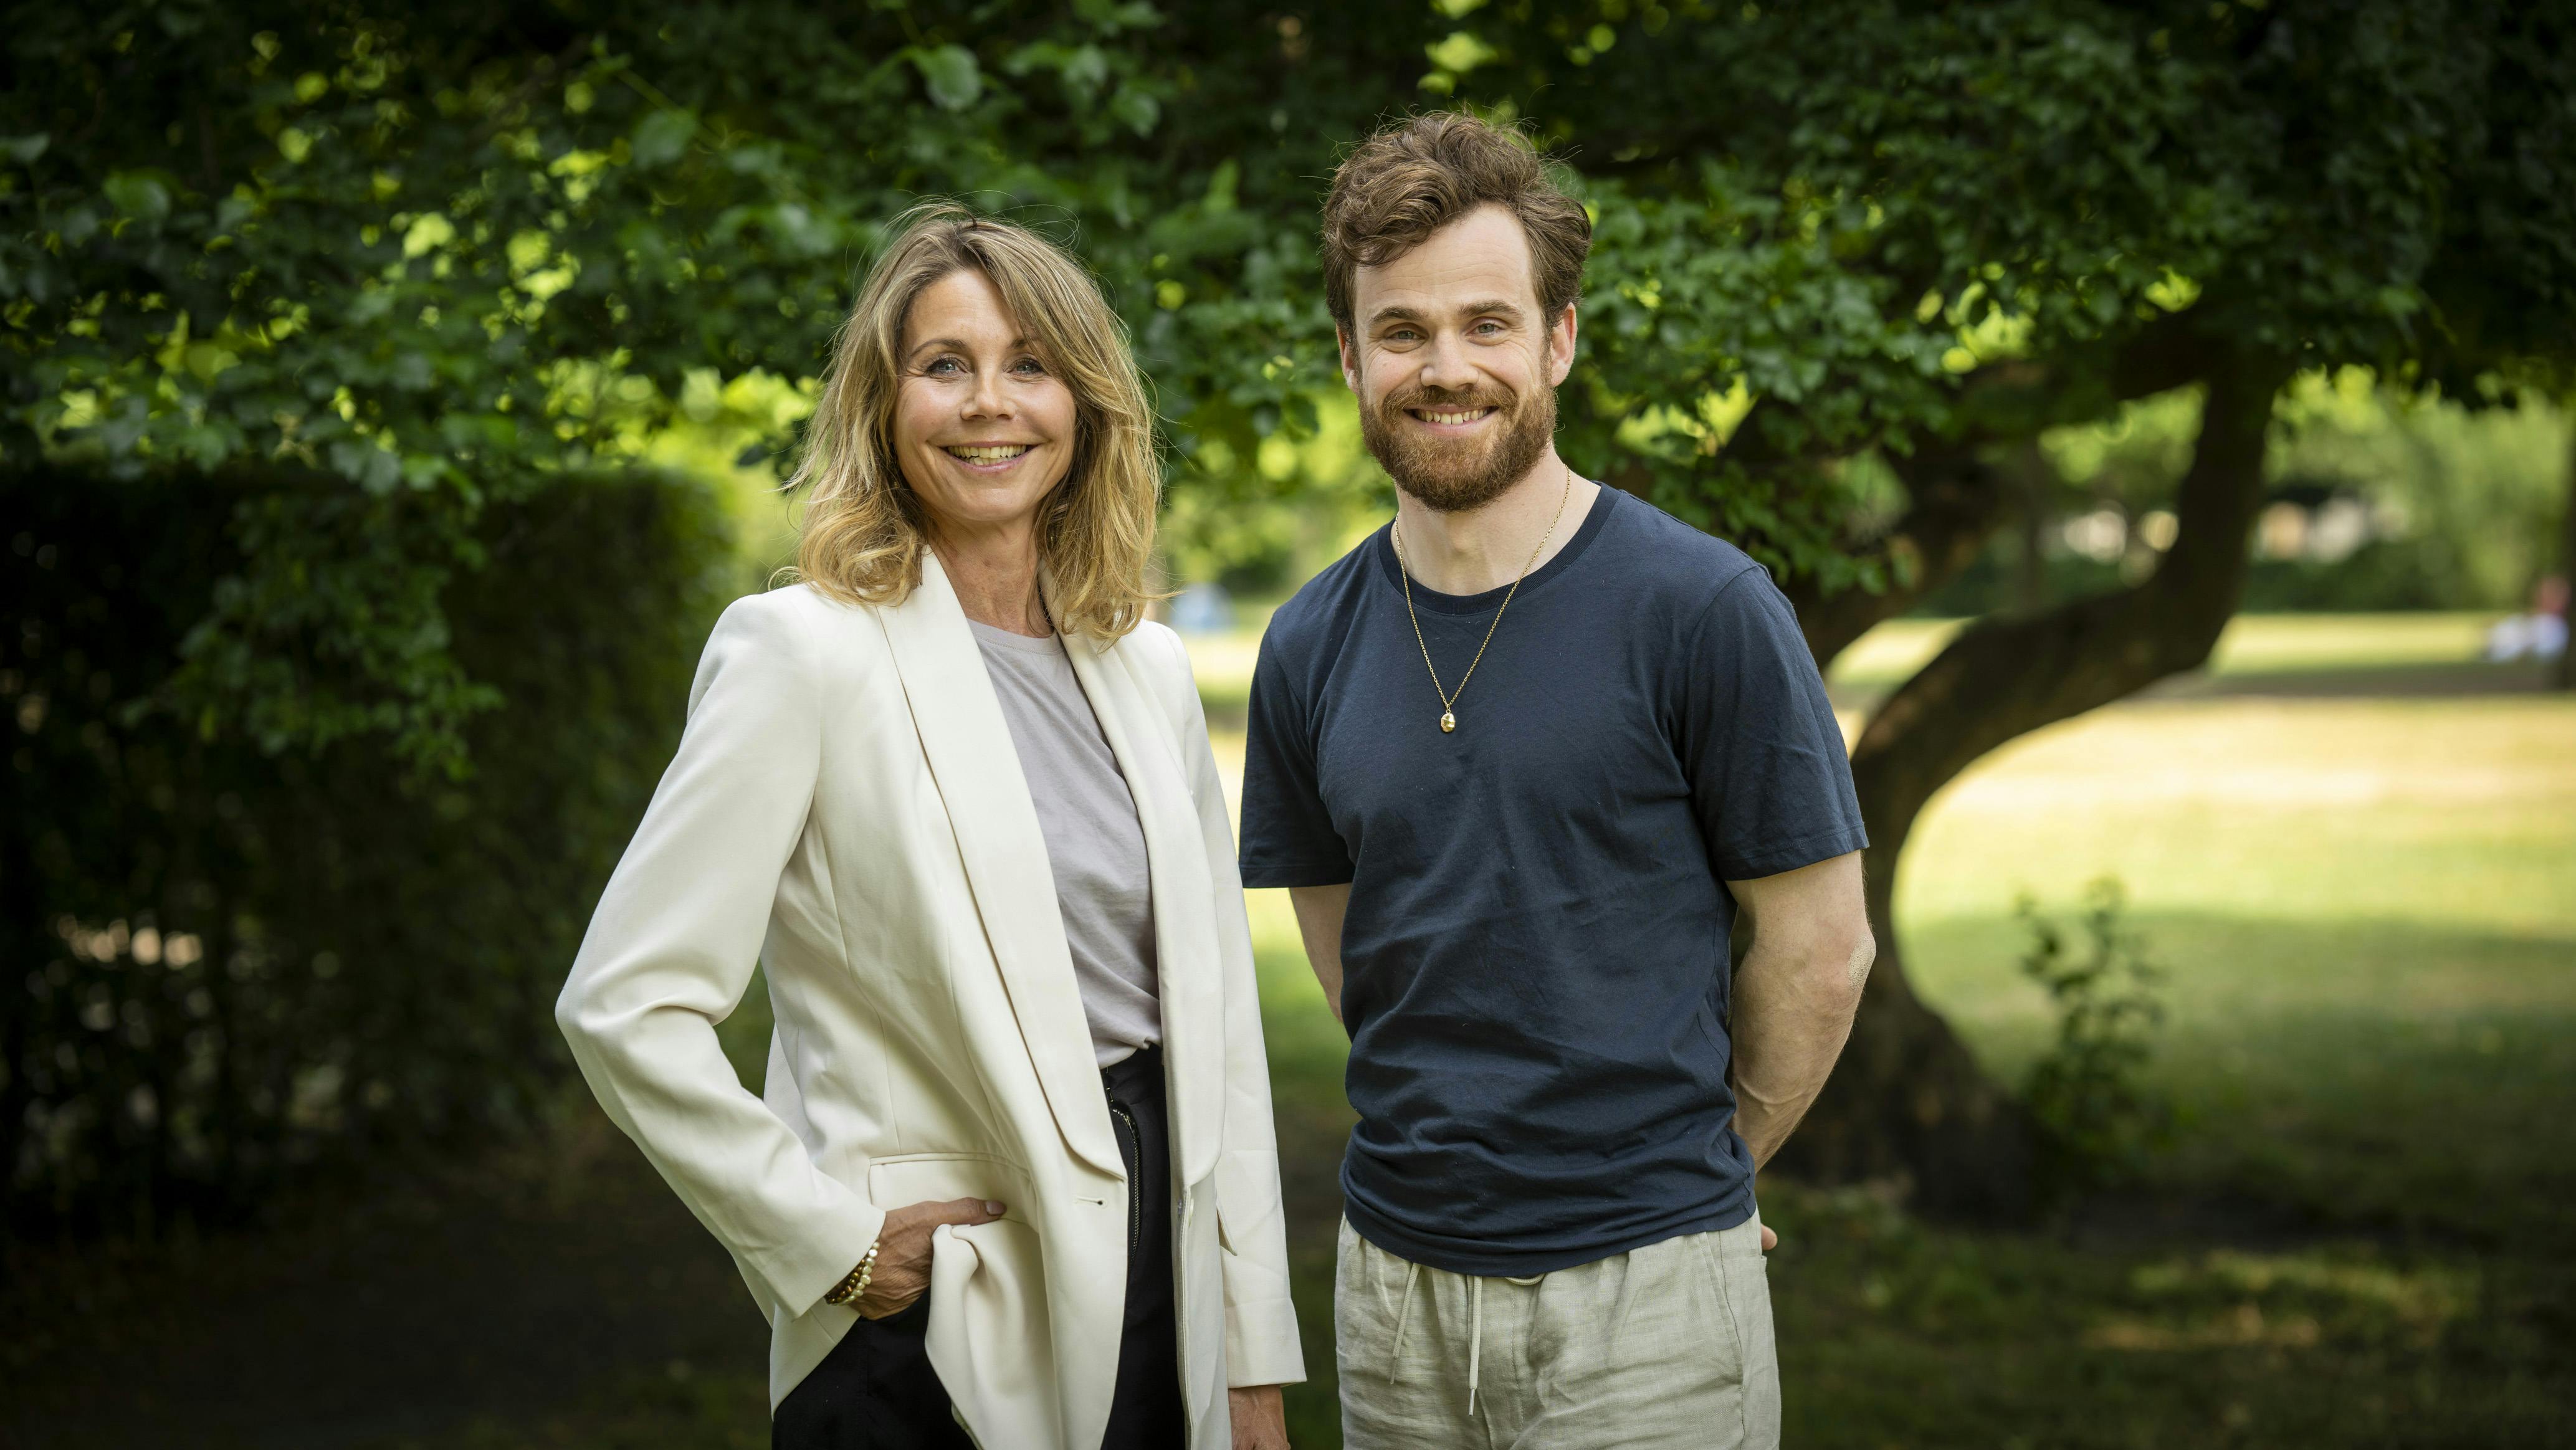 Anne Louise Hassing og Allan Hyde spiller hovedrollerne i sæson 2 af TV 2-serien "Hvide Sande". Premiere i 2025.